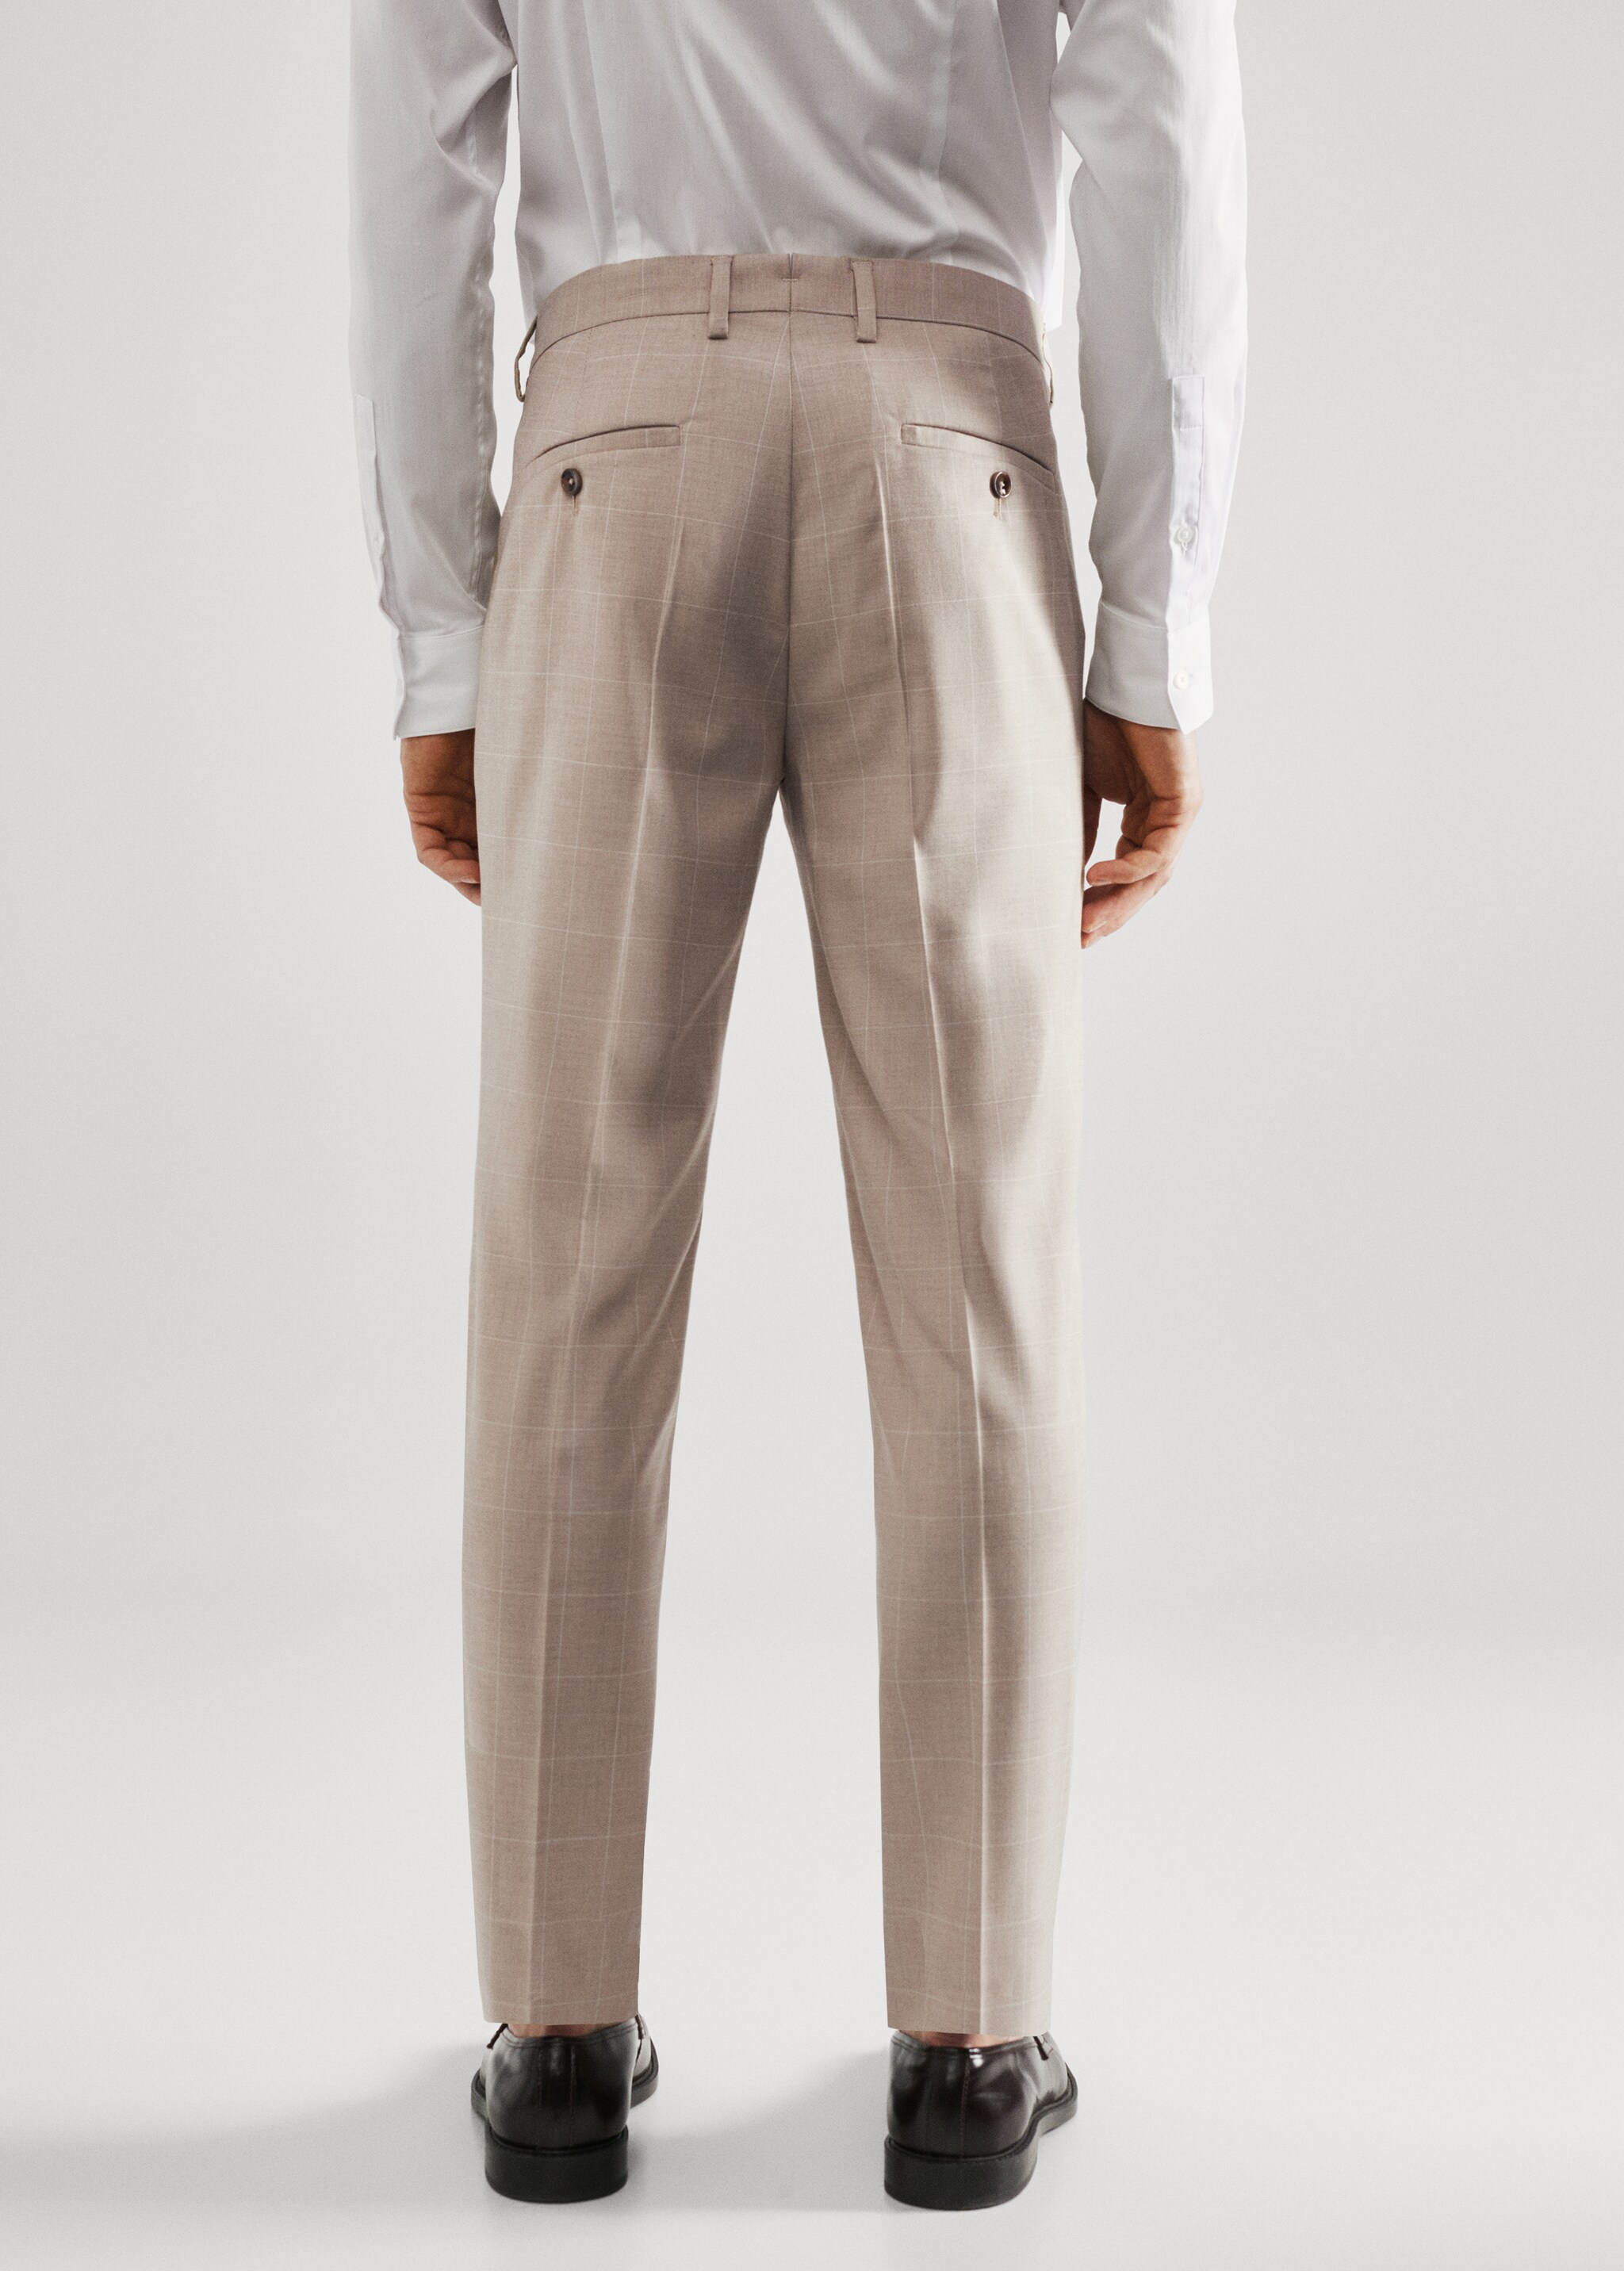 Spodnie garniturowe super slim fit w kratę - Tylna strona artykułu